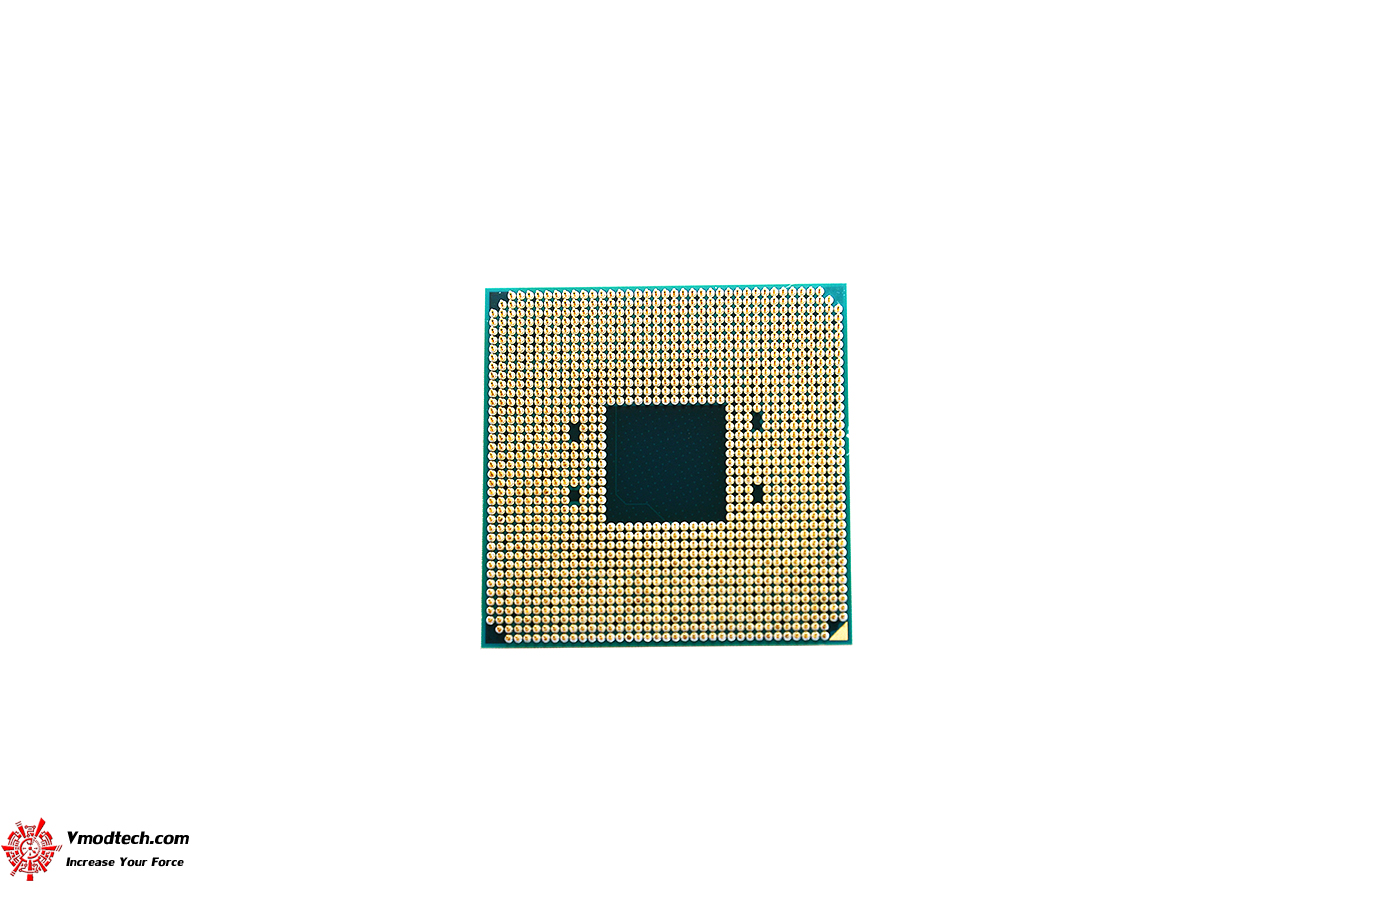 dsc 6600 AMD RYZEN 5 1600X Review